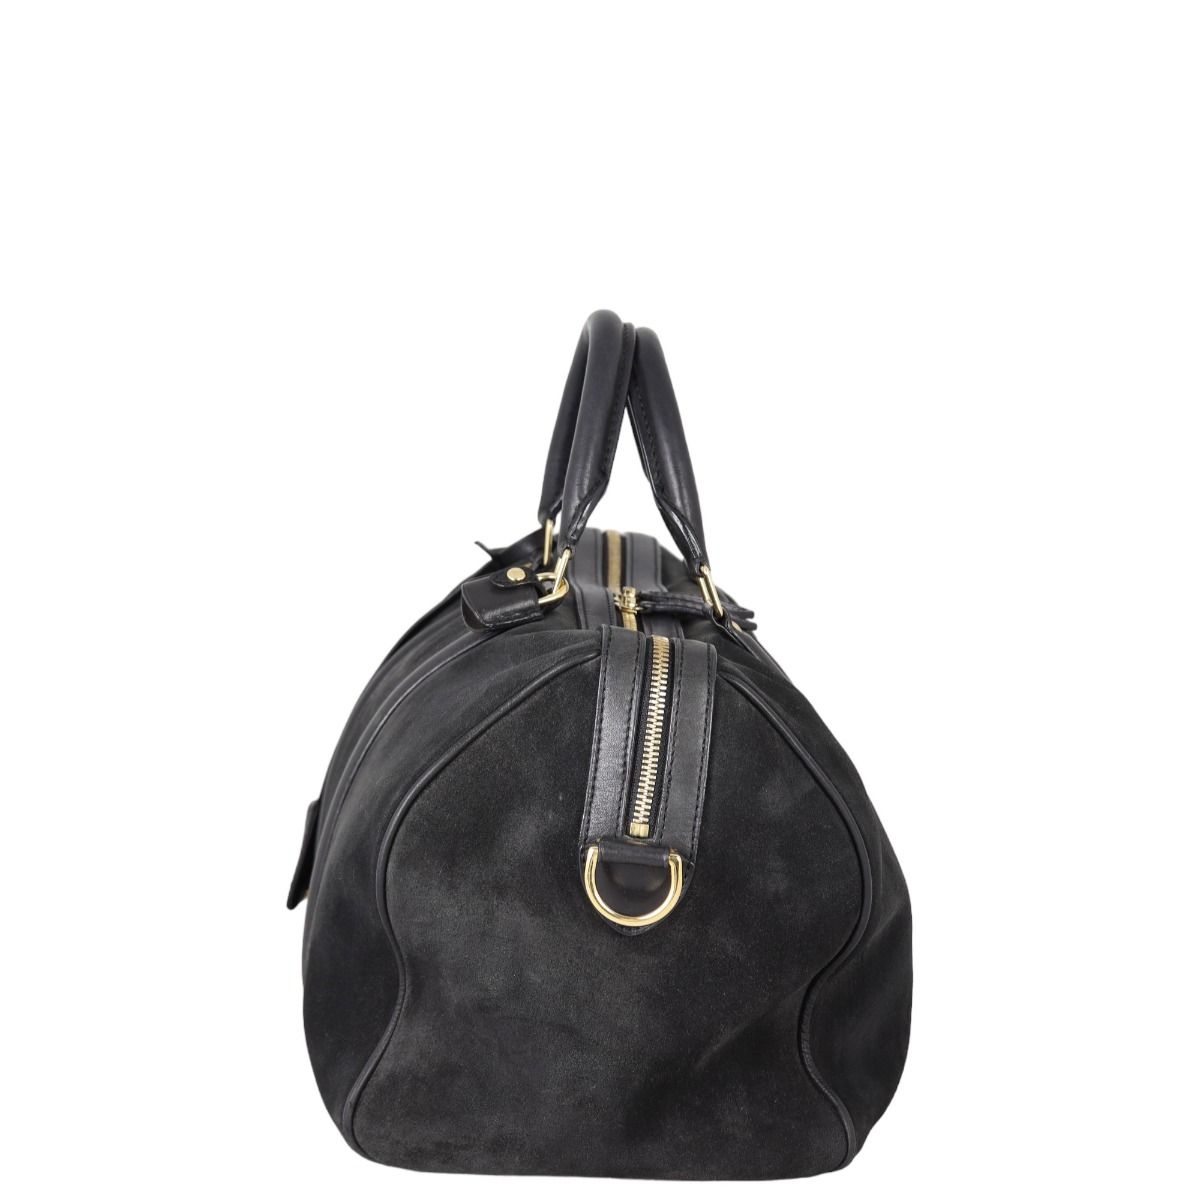 Sofia coppola handbag Louis Vuitton Grey in Suede - 34807781